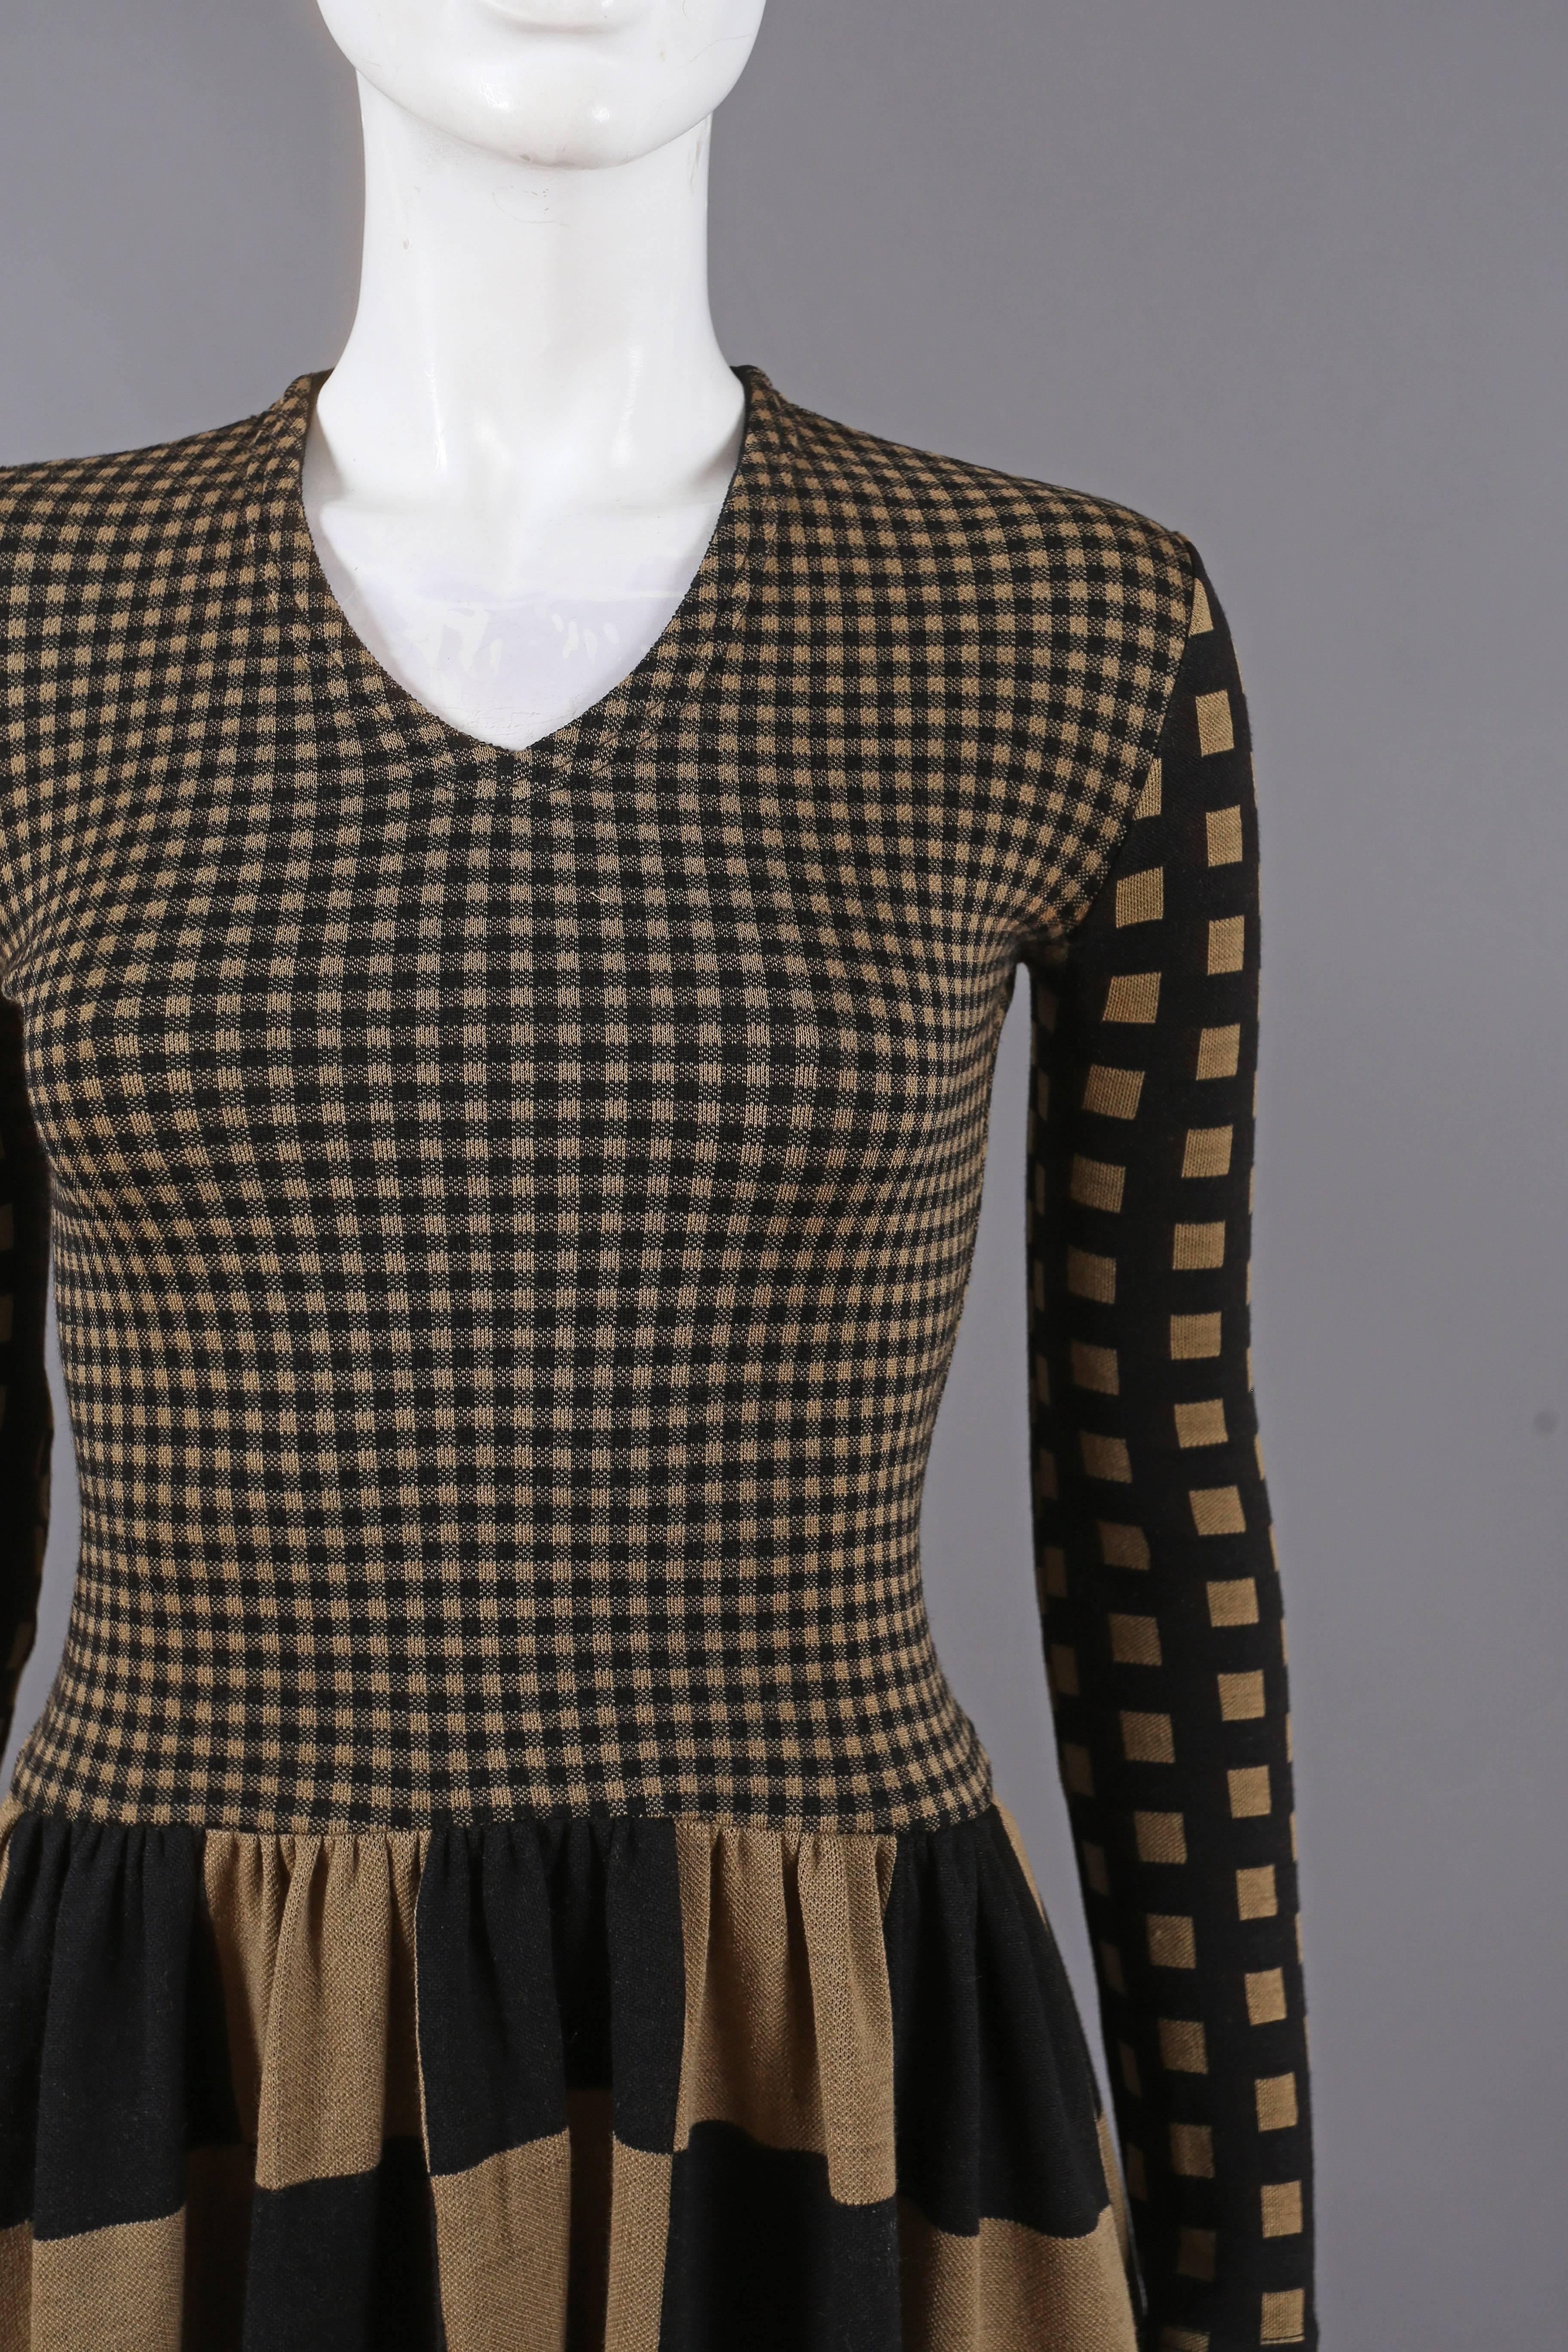 Rudi Gernreich chessboard knitted dress, C. 1971 1